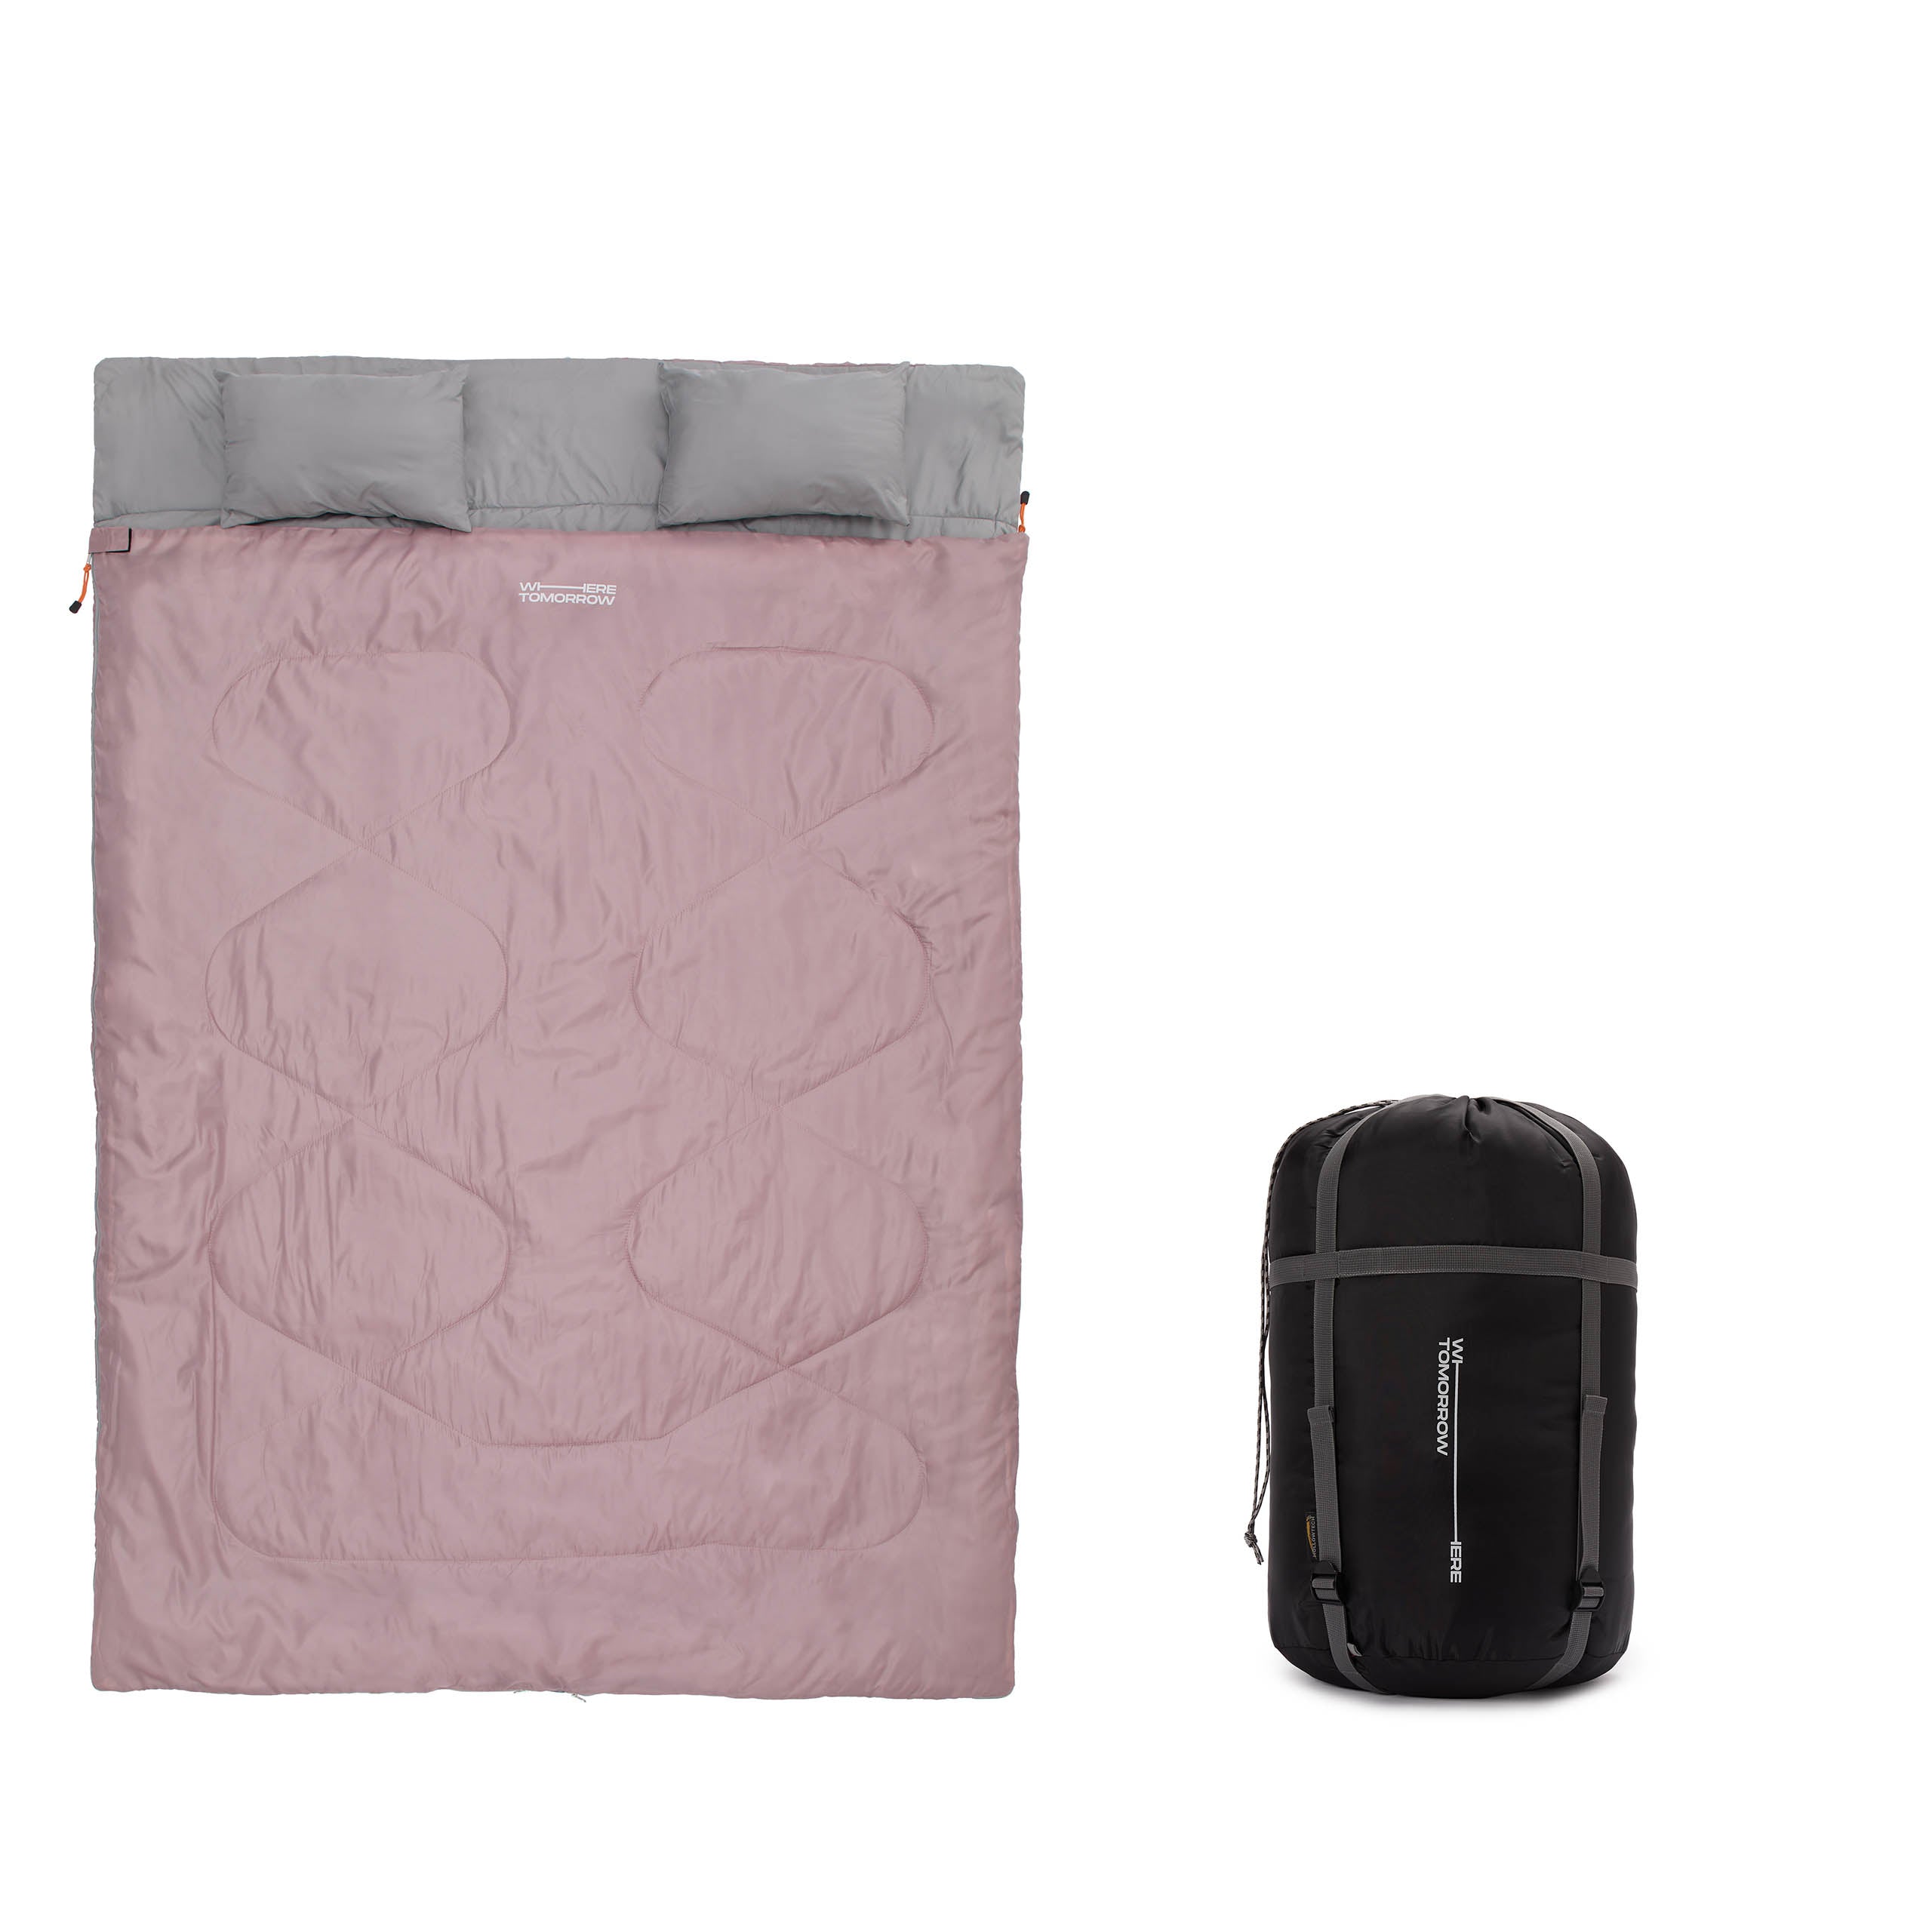 Doppelschlafsack mit Tragetasche - 2-Personen Schlafsack - 190 x 150 cm - Rosé